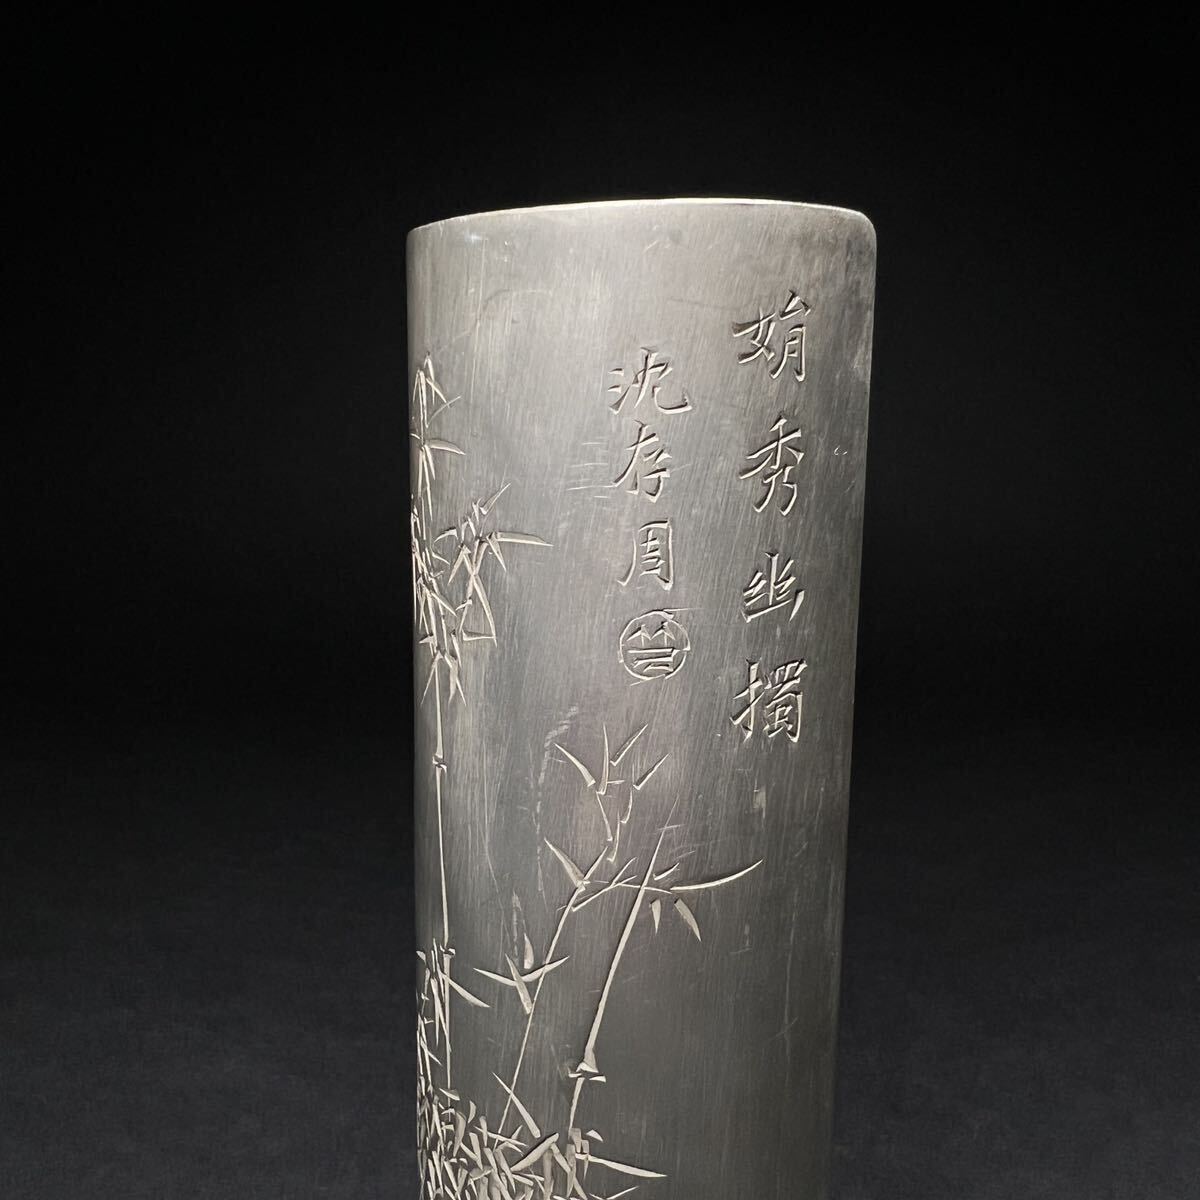  чай количество старый . Tang предмет ... Zaimei умение гравюра бамбук . поэзия China старый изобразительное искусство . чайная посуда чай . чай . чайная посуда вес 147g